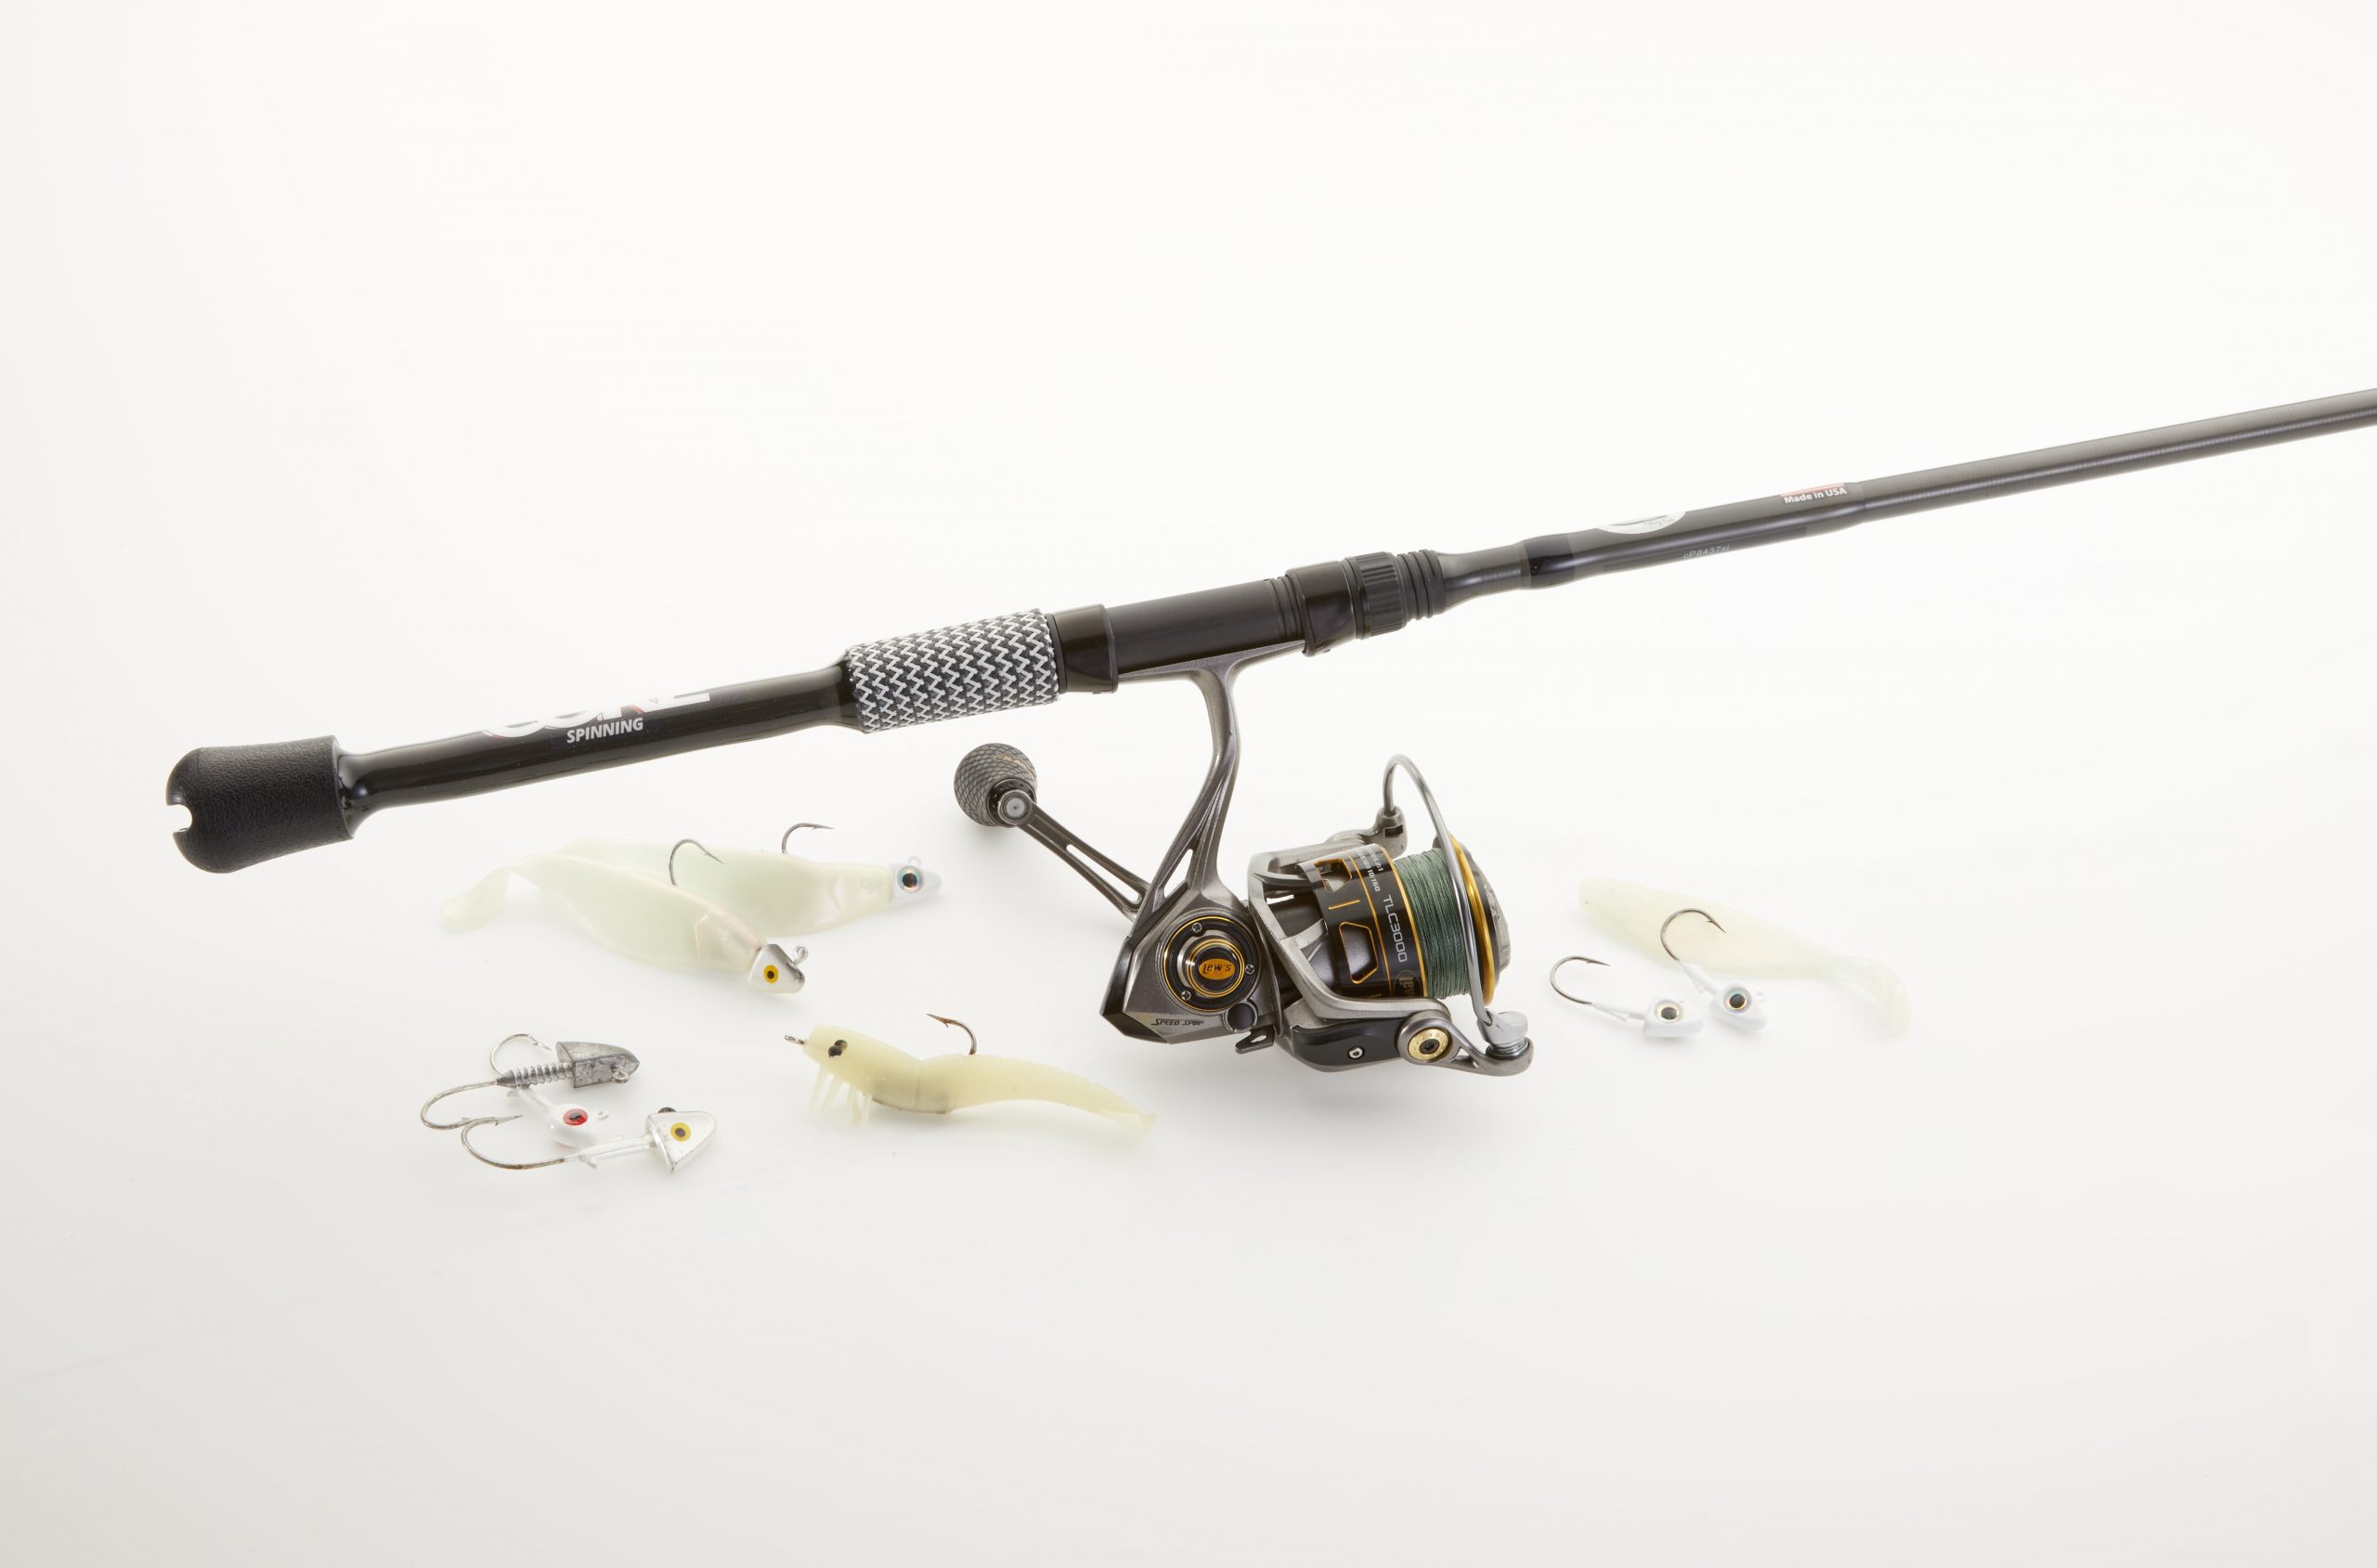 Cashion Fishing Rods – Fishing Tackle Retailer Buyer's Guide